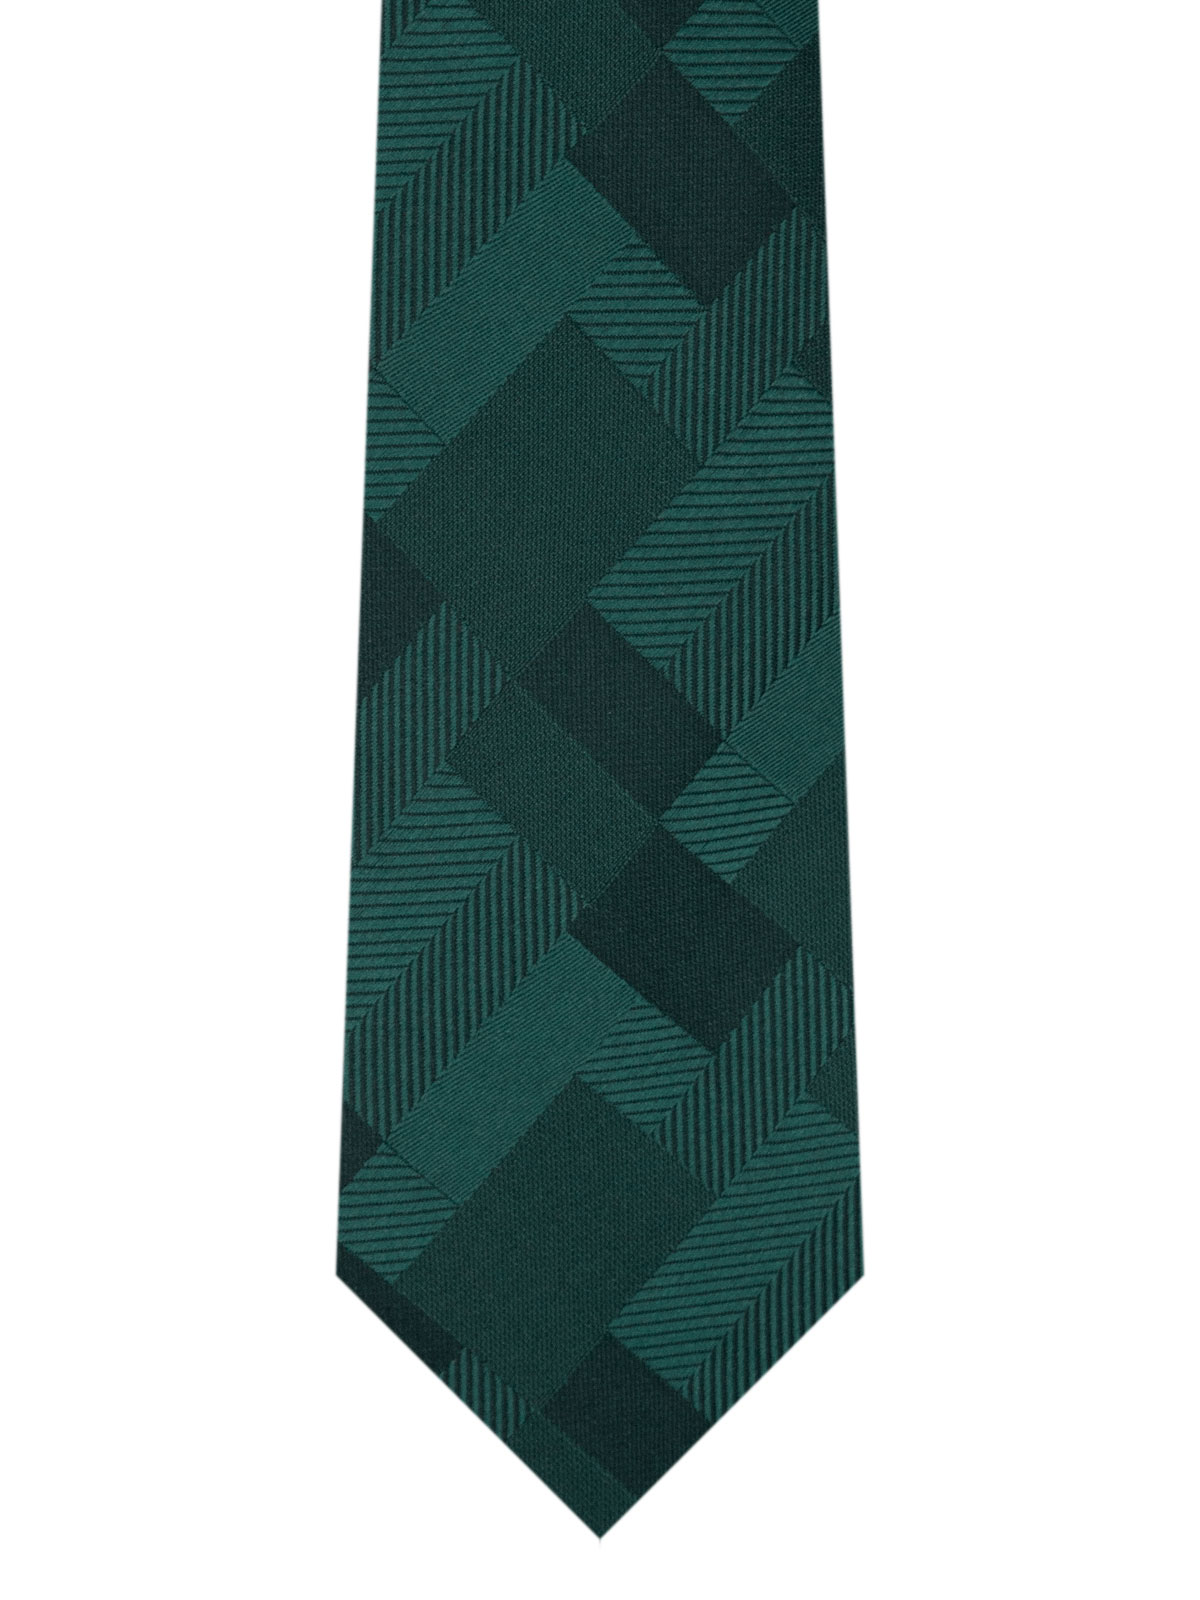 Πράσινη γραβάτα με σχέδια - 10188 - € 14.06 img2